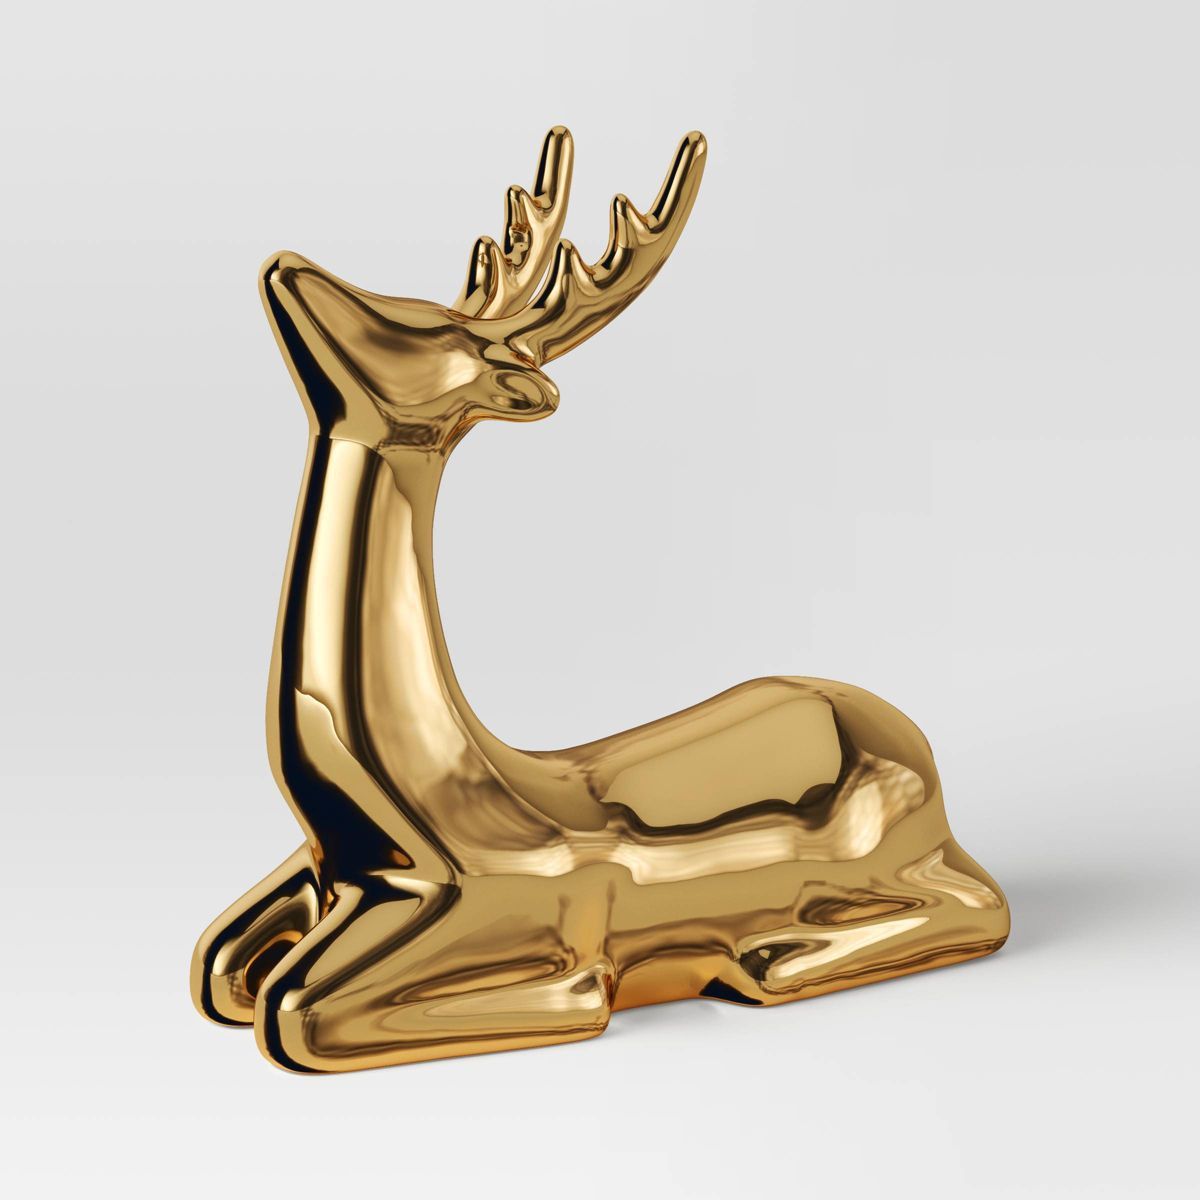 8.75" Plated Ceramic Sitting Deer Animal Christmas Figurine - Wondershop™ Gold | Target